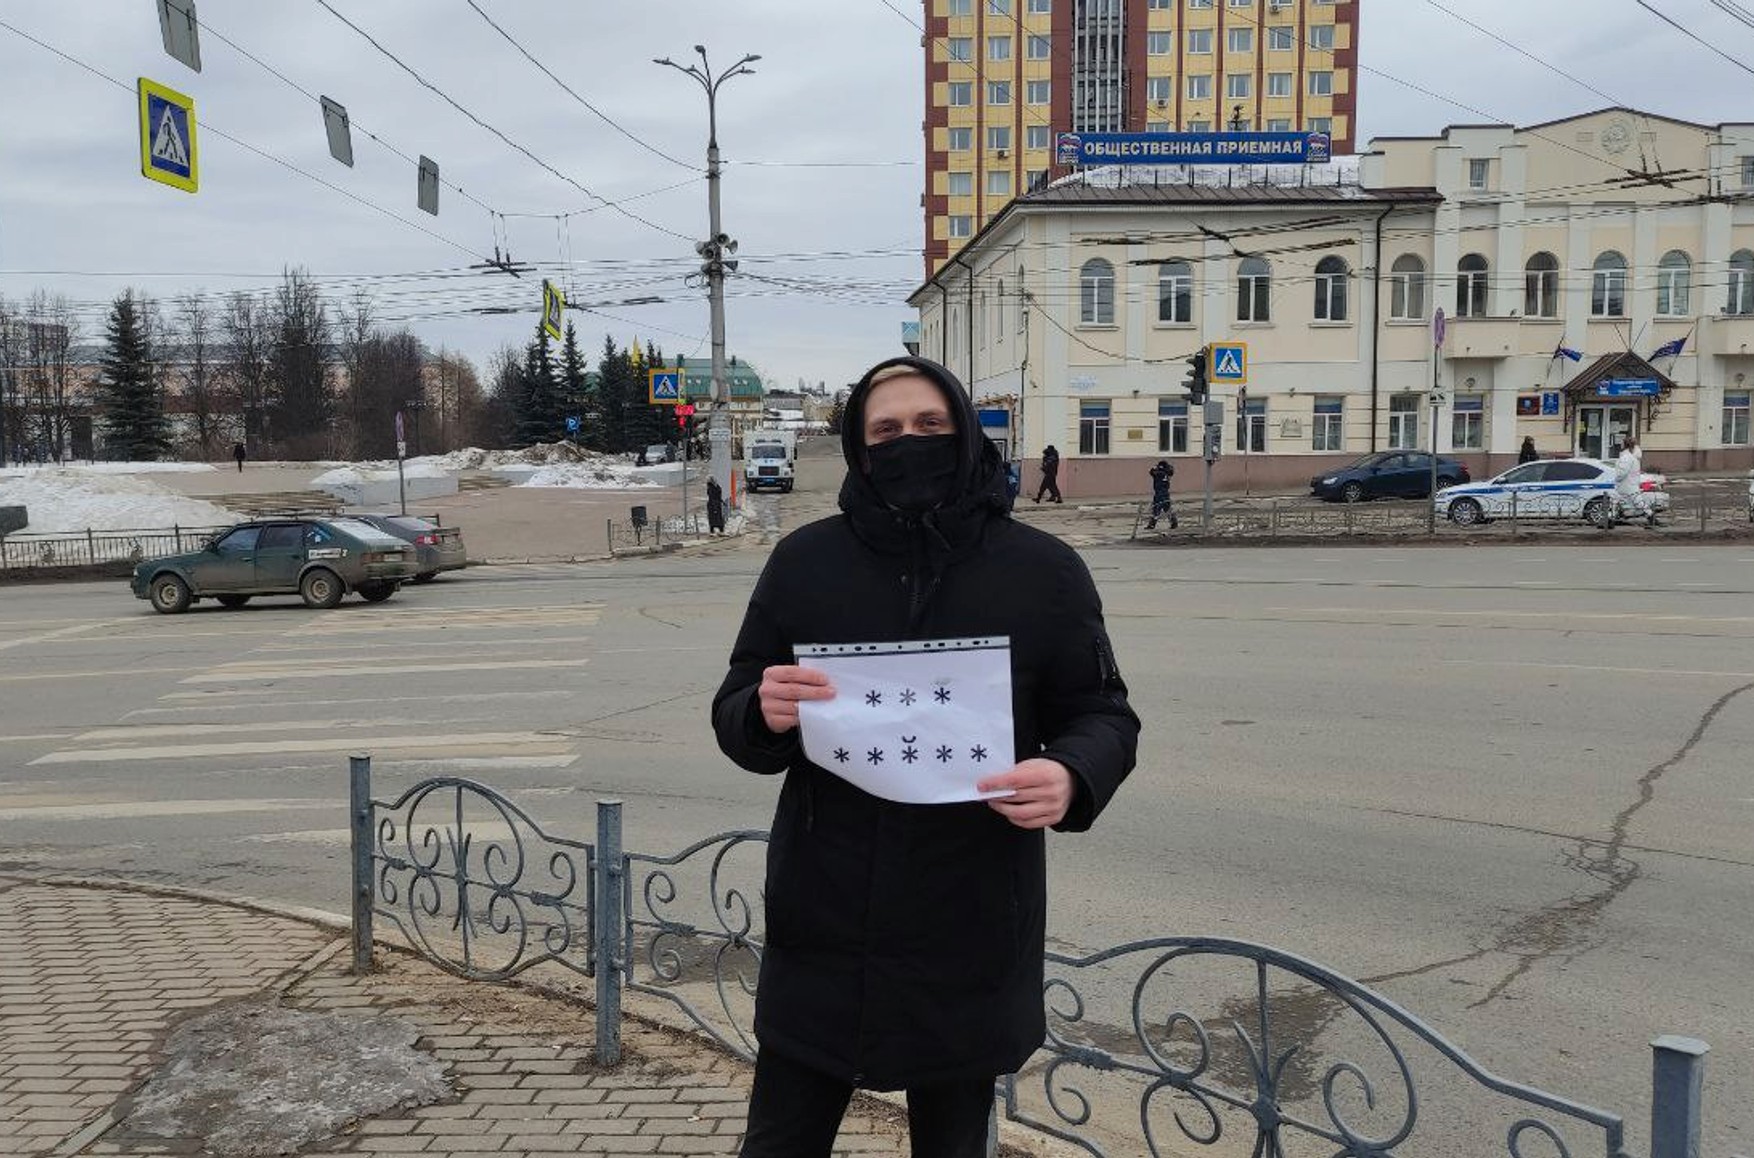 В Иваново признали законным задержание за плакат «*** *****». По мнению суда, звездочки символизируют Рабоче-крестьянскую Красную армию